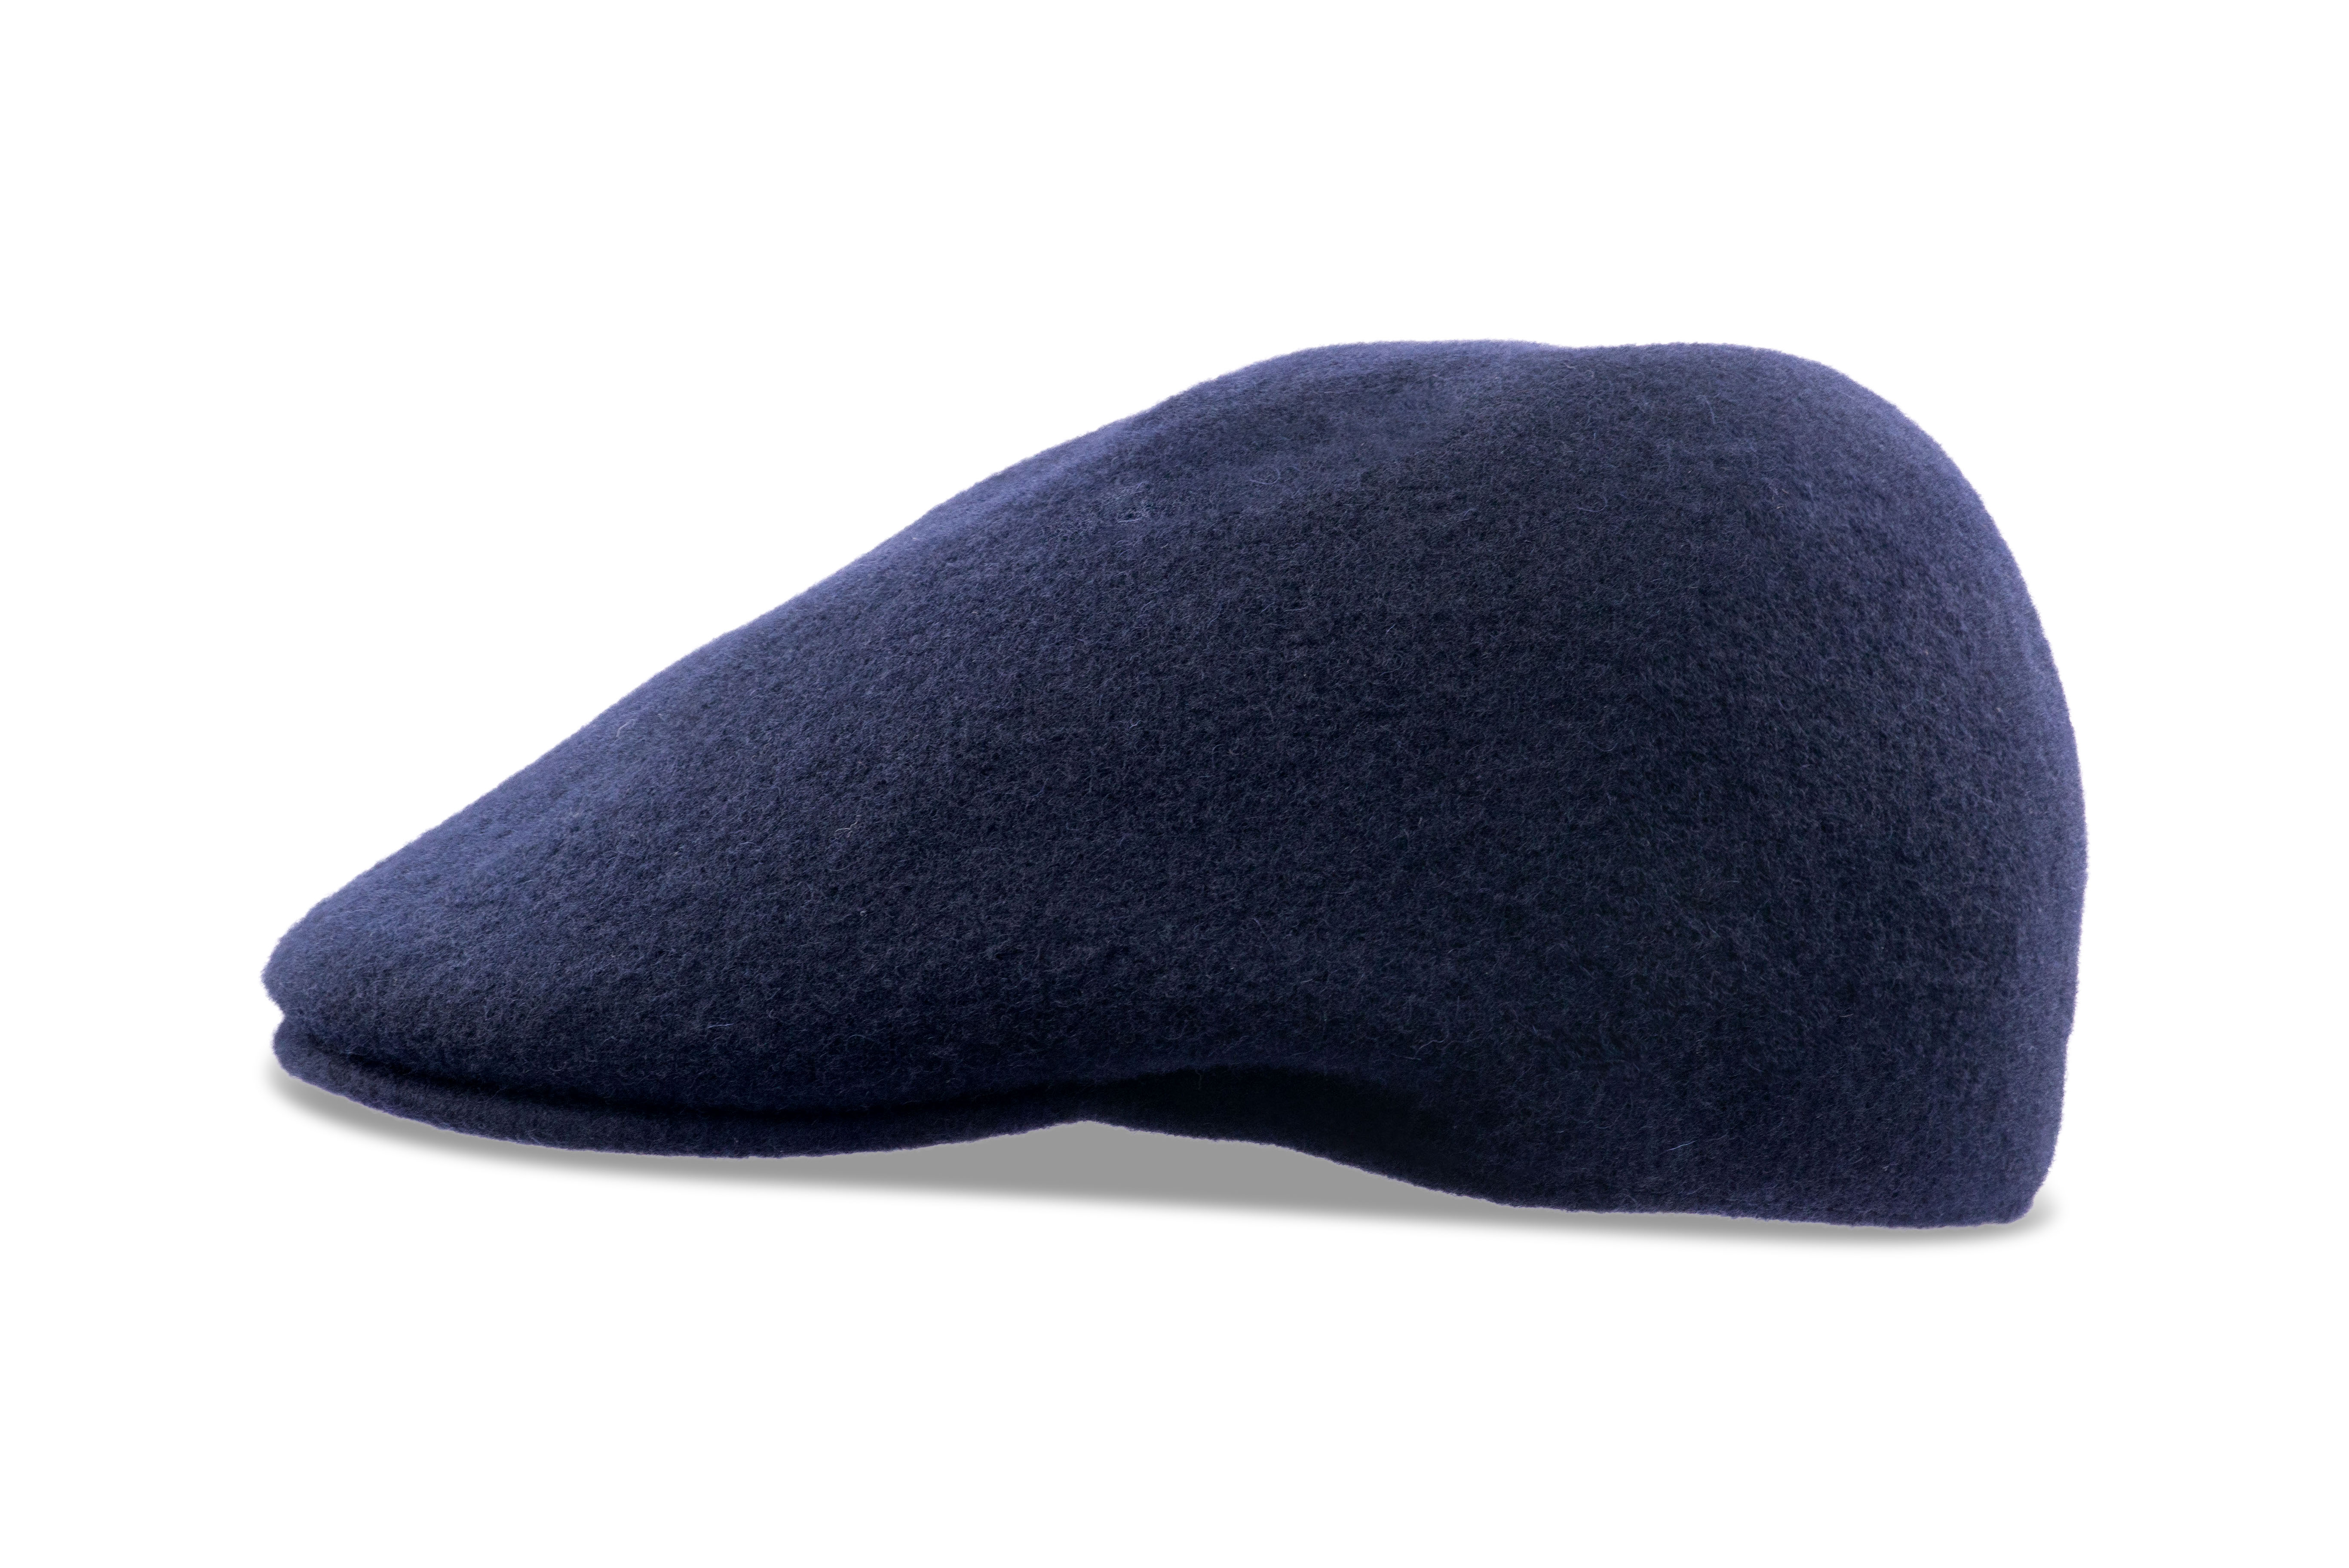 Kangol Seamless Wool 507 Felt Hat for Men and Women - Dark Blue - XL